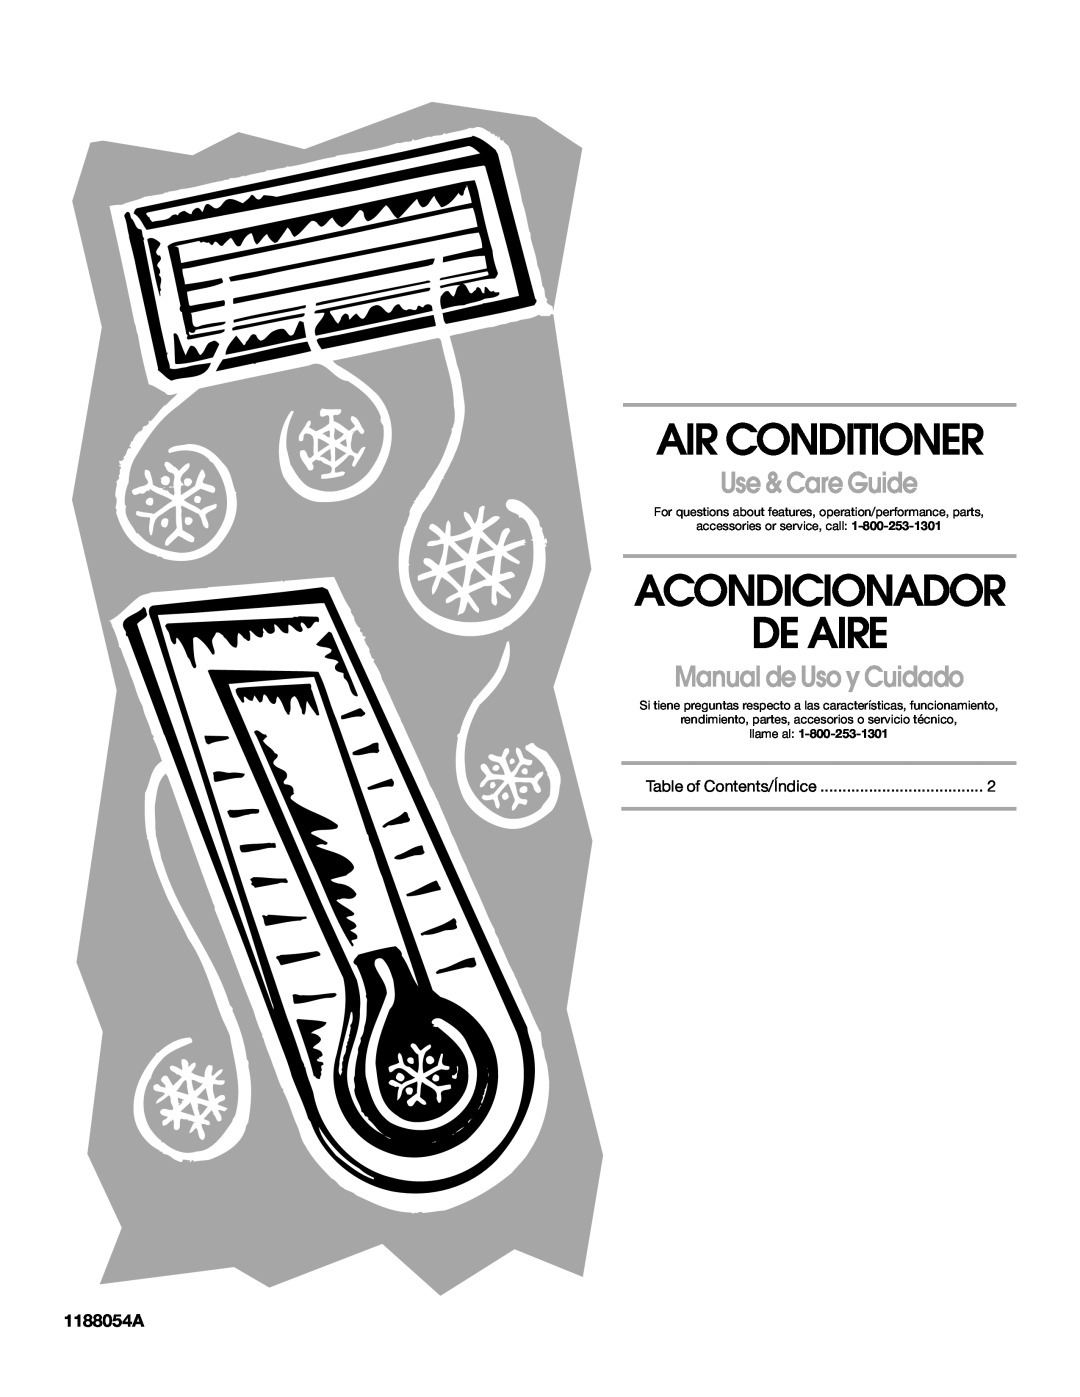 Whirlpool ACM122XR0 manual 1188054A, Air Conditioner, Acondicionador De Aire, Use & Care Guide, Manual de Uso y Cuidado 